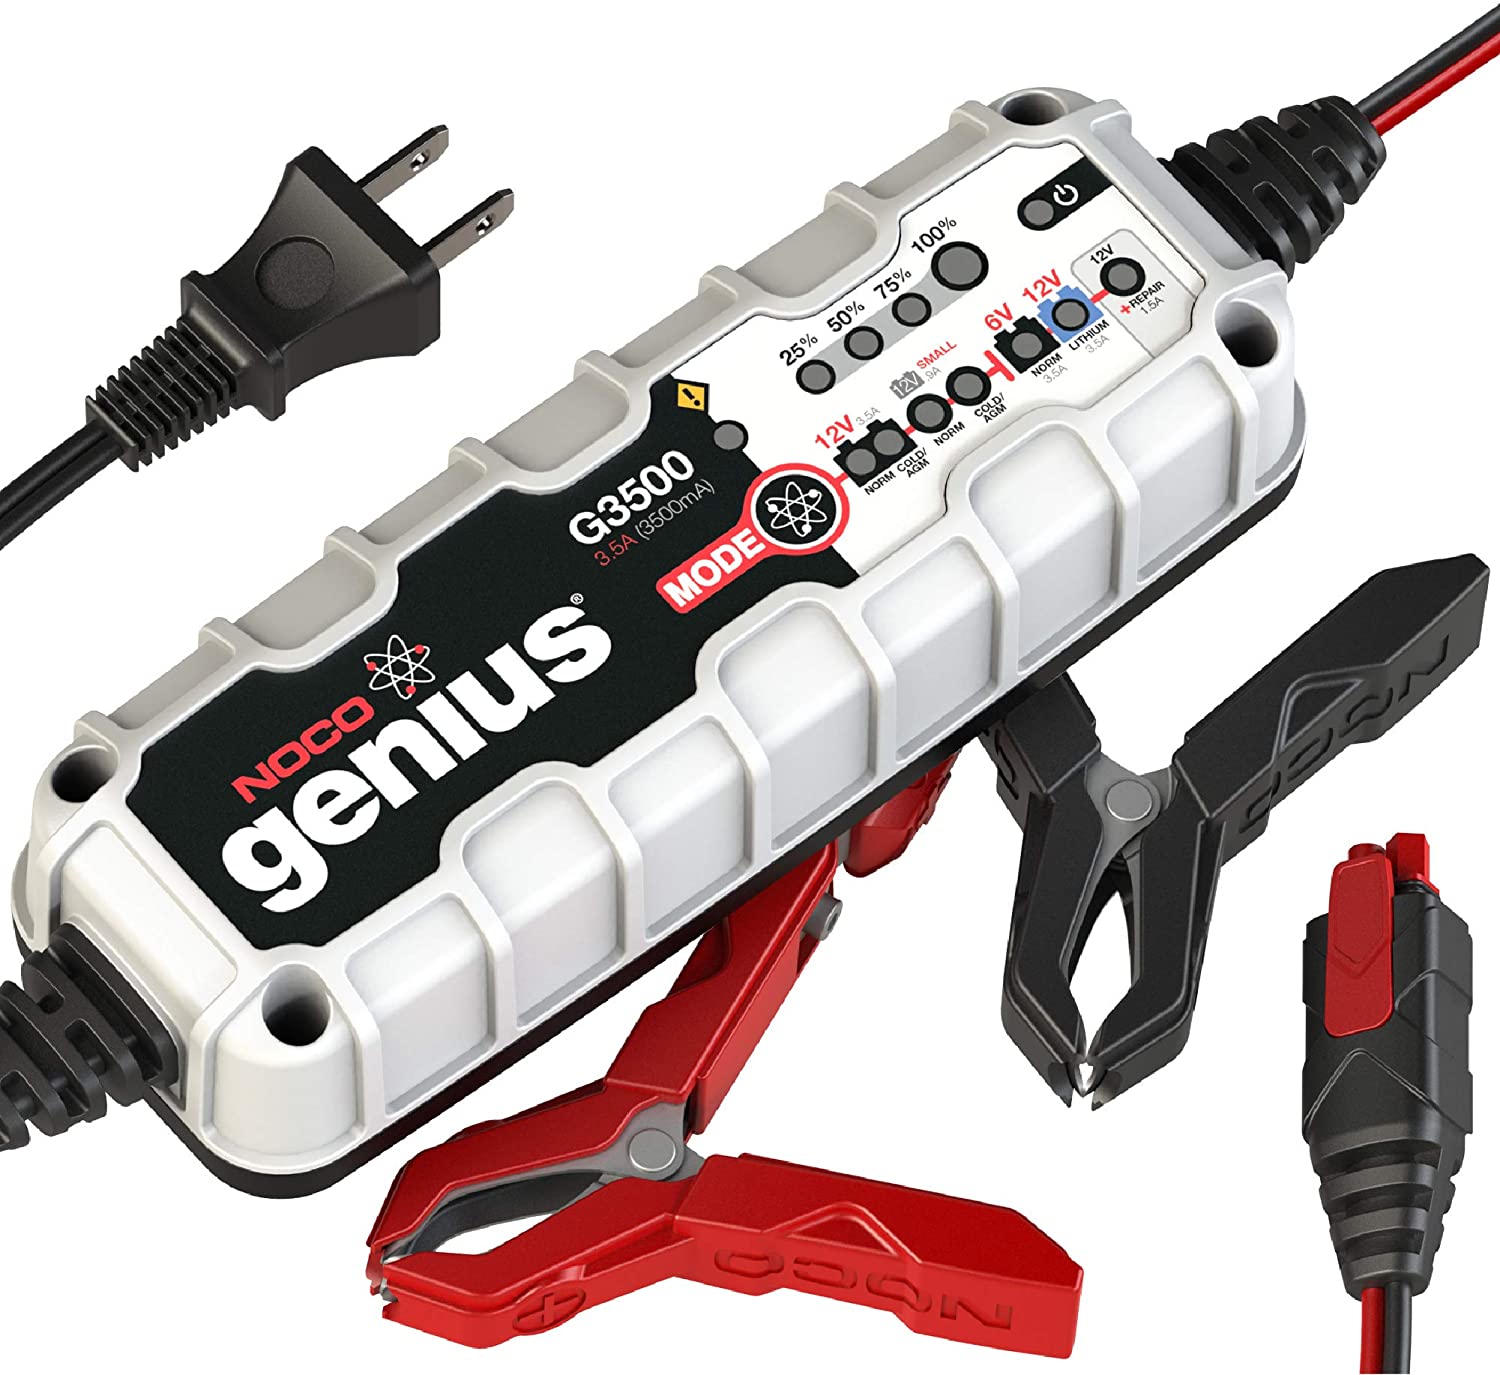 NOCO-Genius-G3500-6V-12V-3-5-Amp-Battery-Charger